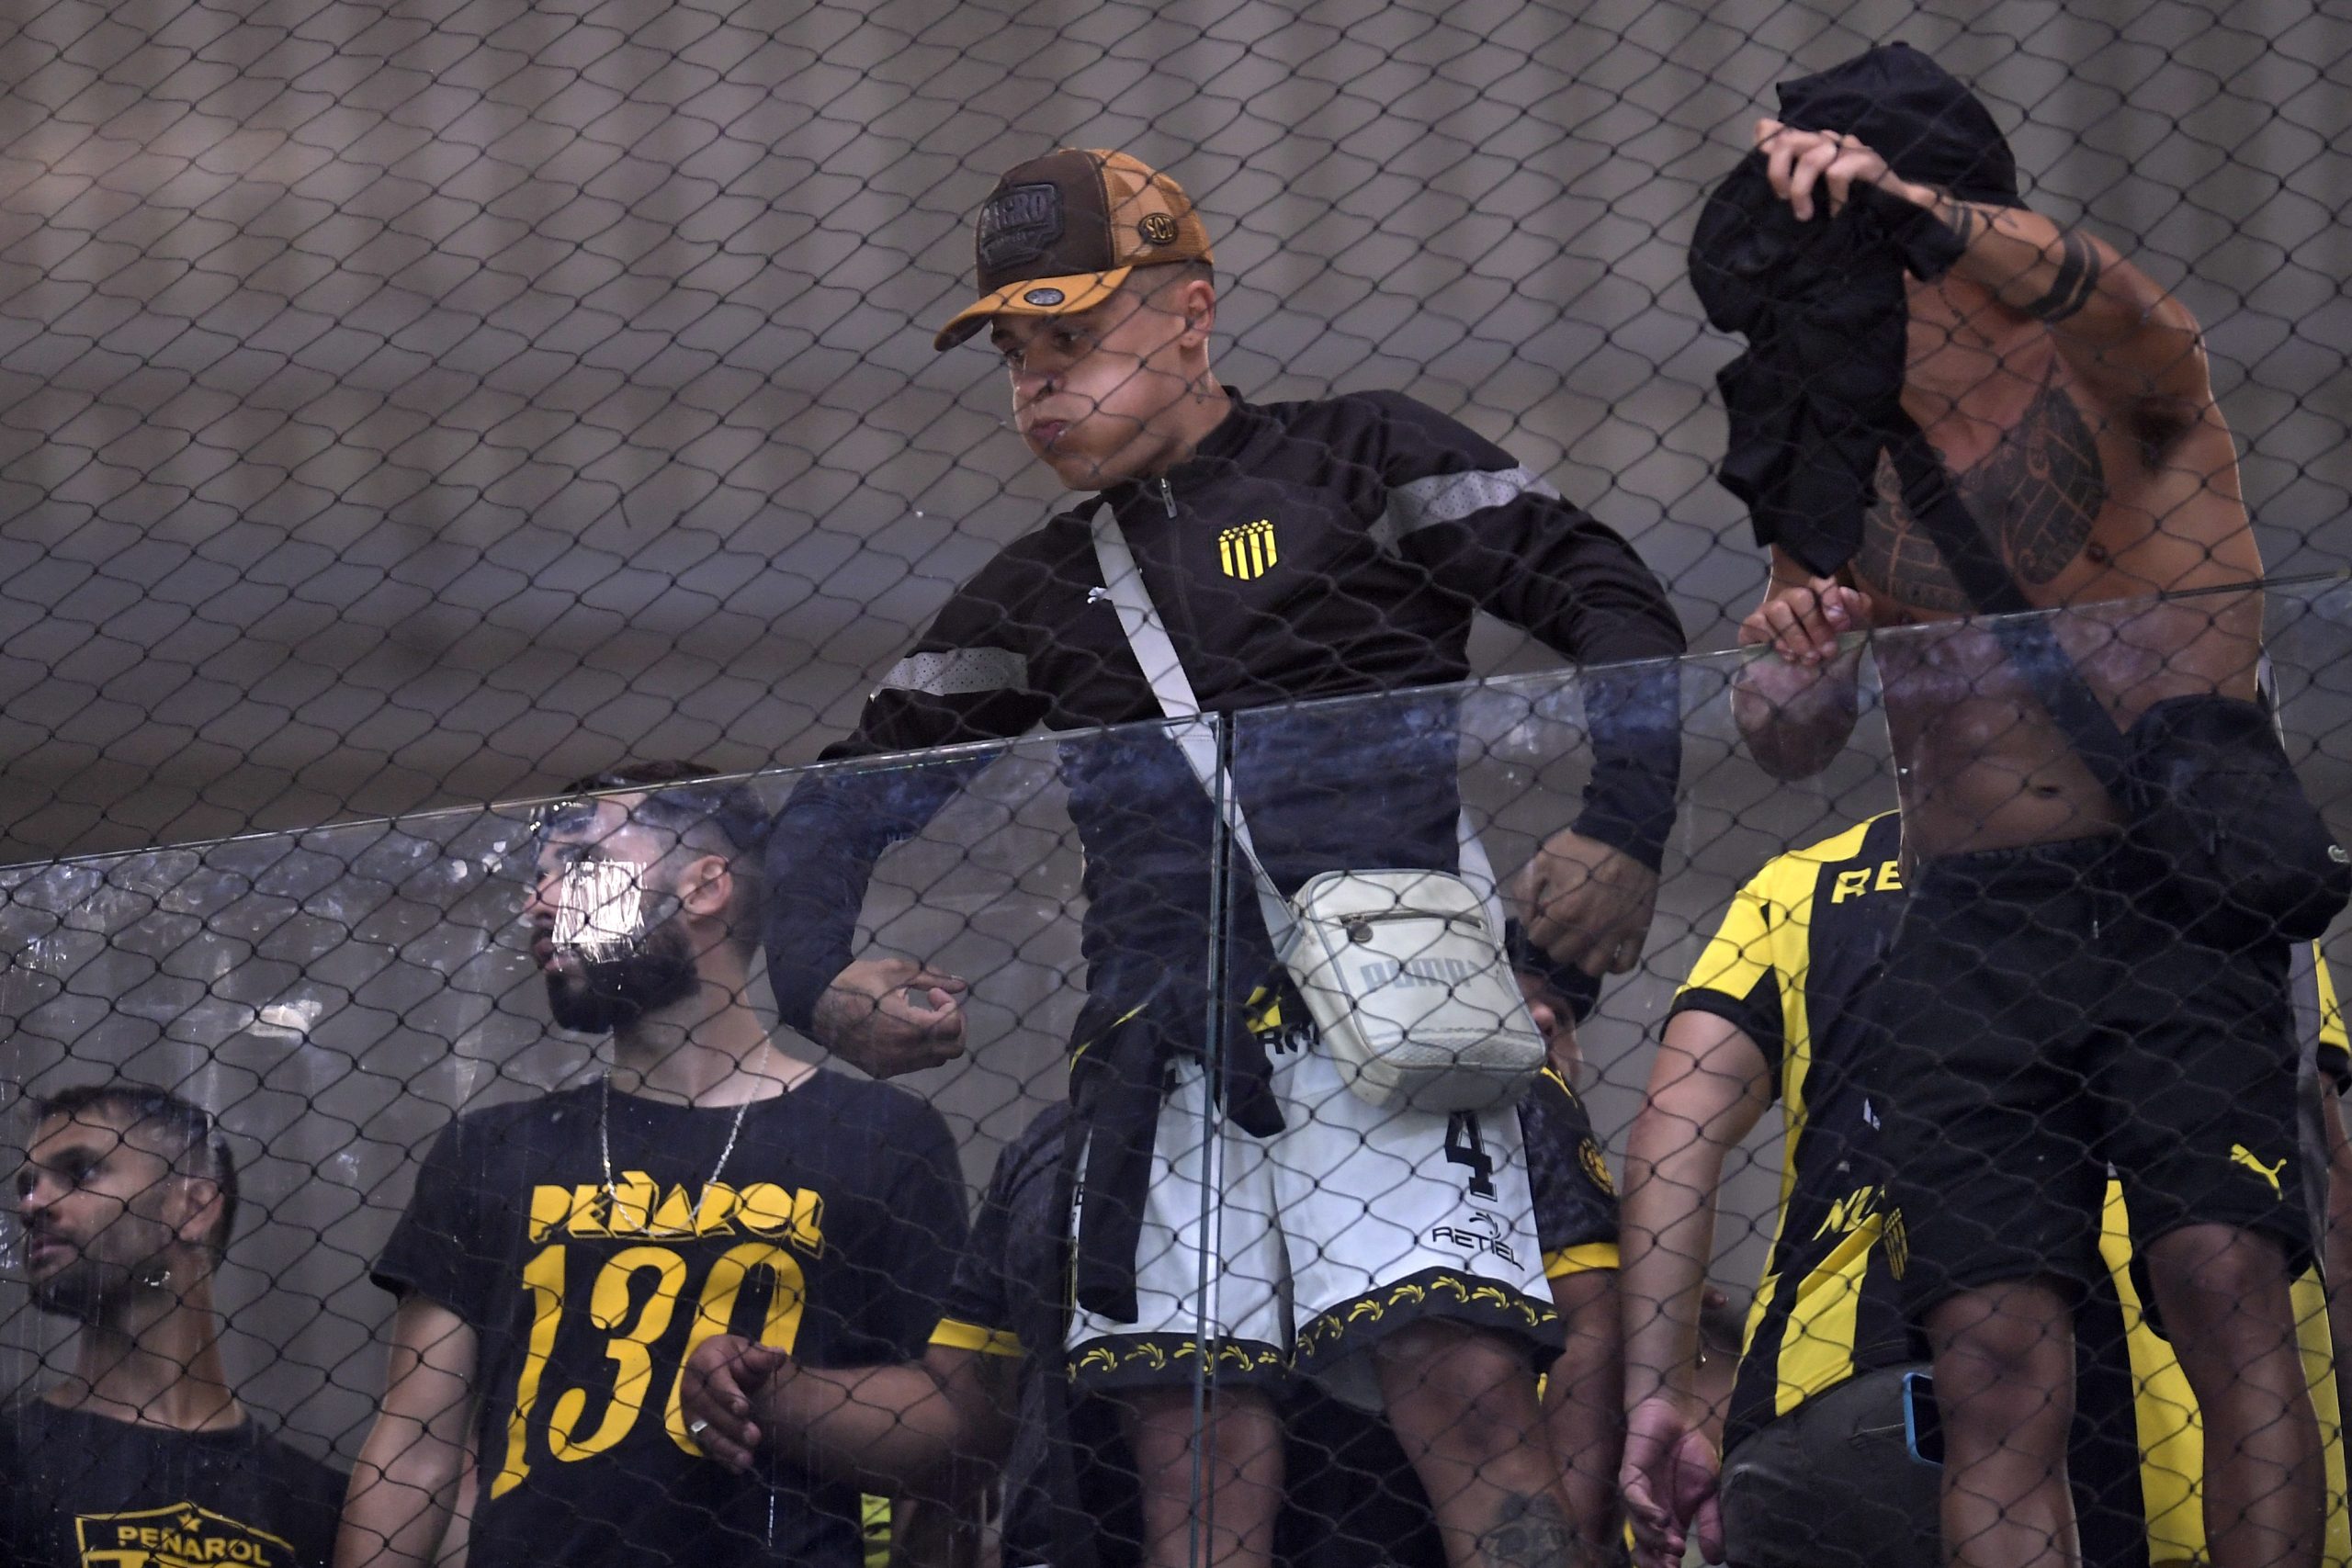 Torcedor faz gesto racista em jogo do Atlético-MG (Foto: DOUGLAS MAGNO/AFP via Getty Images)